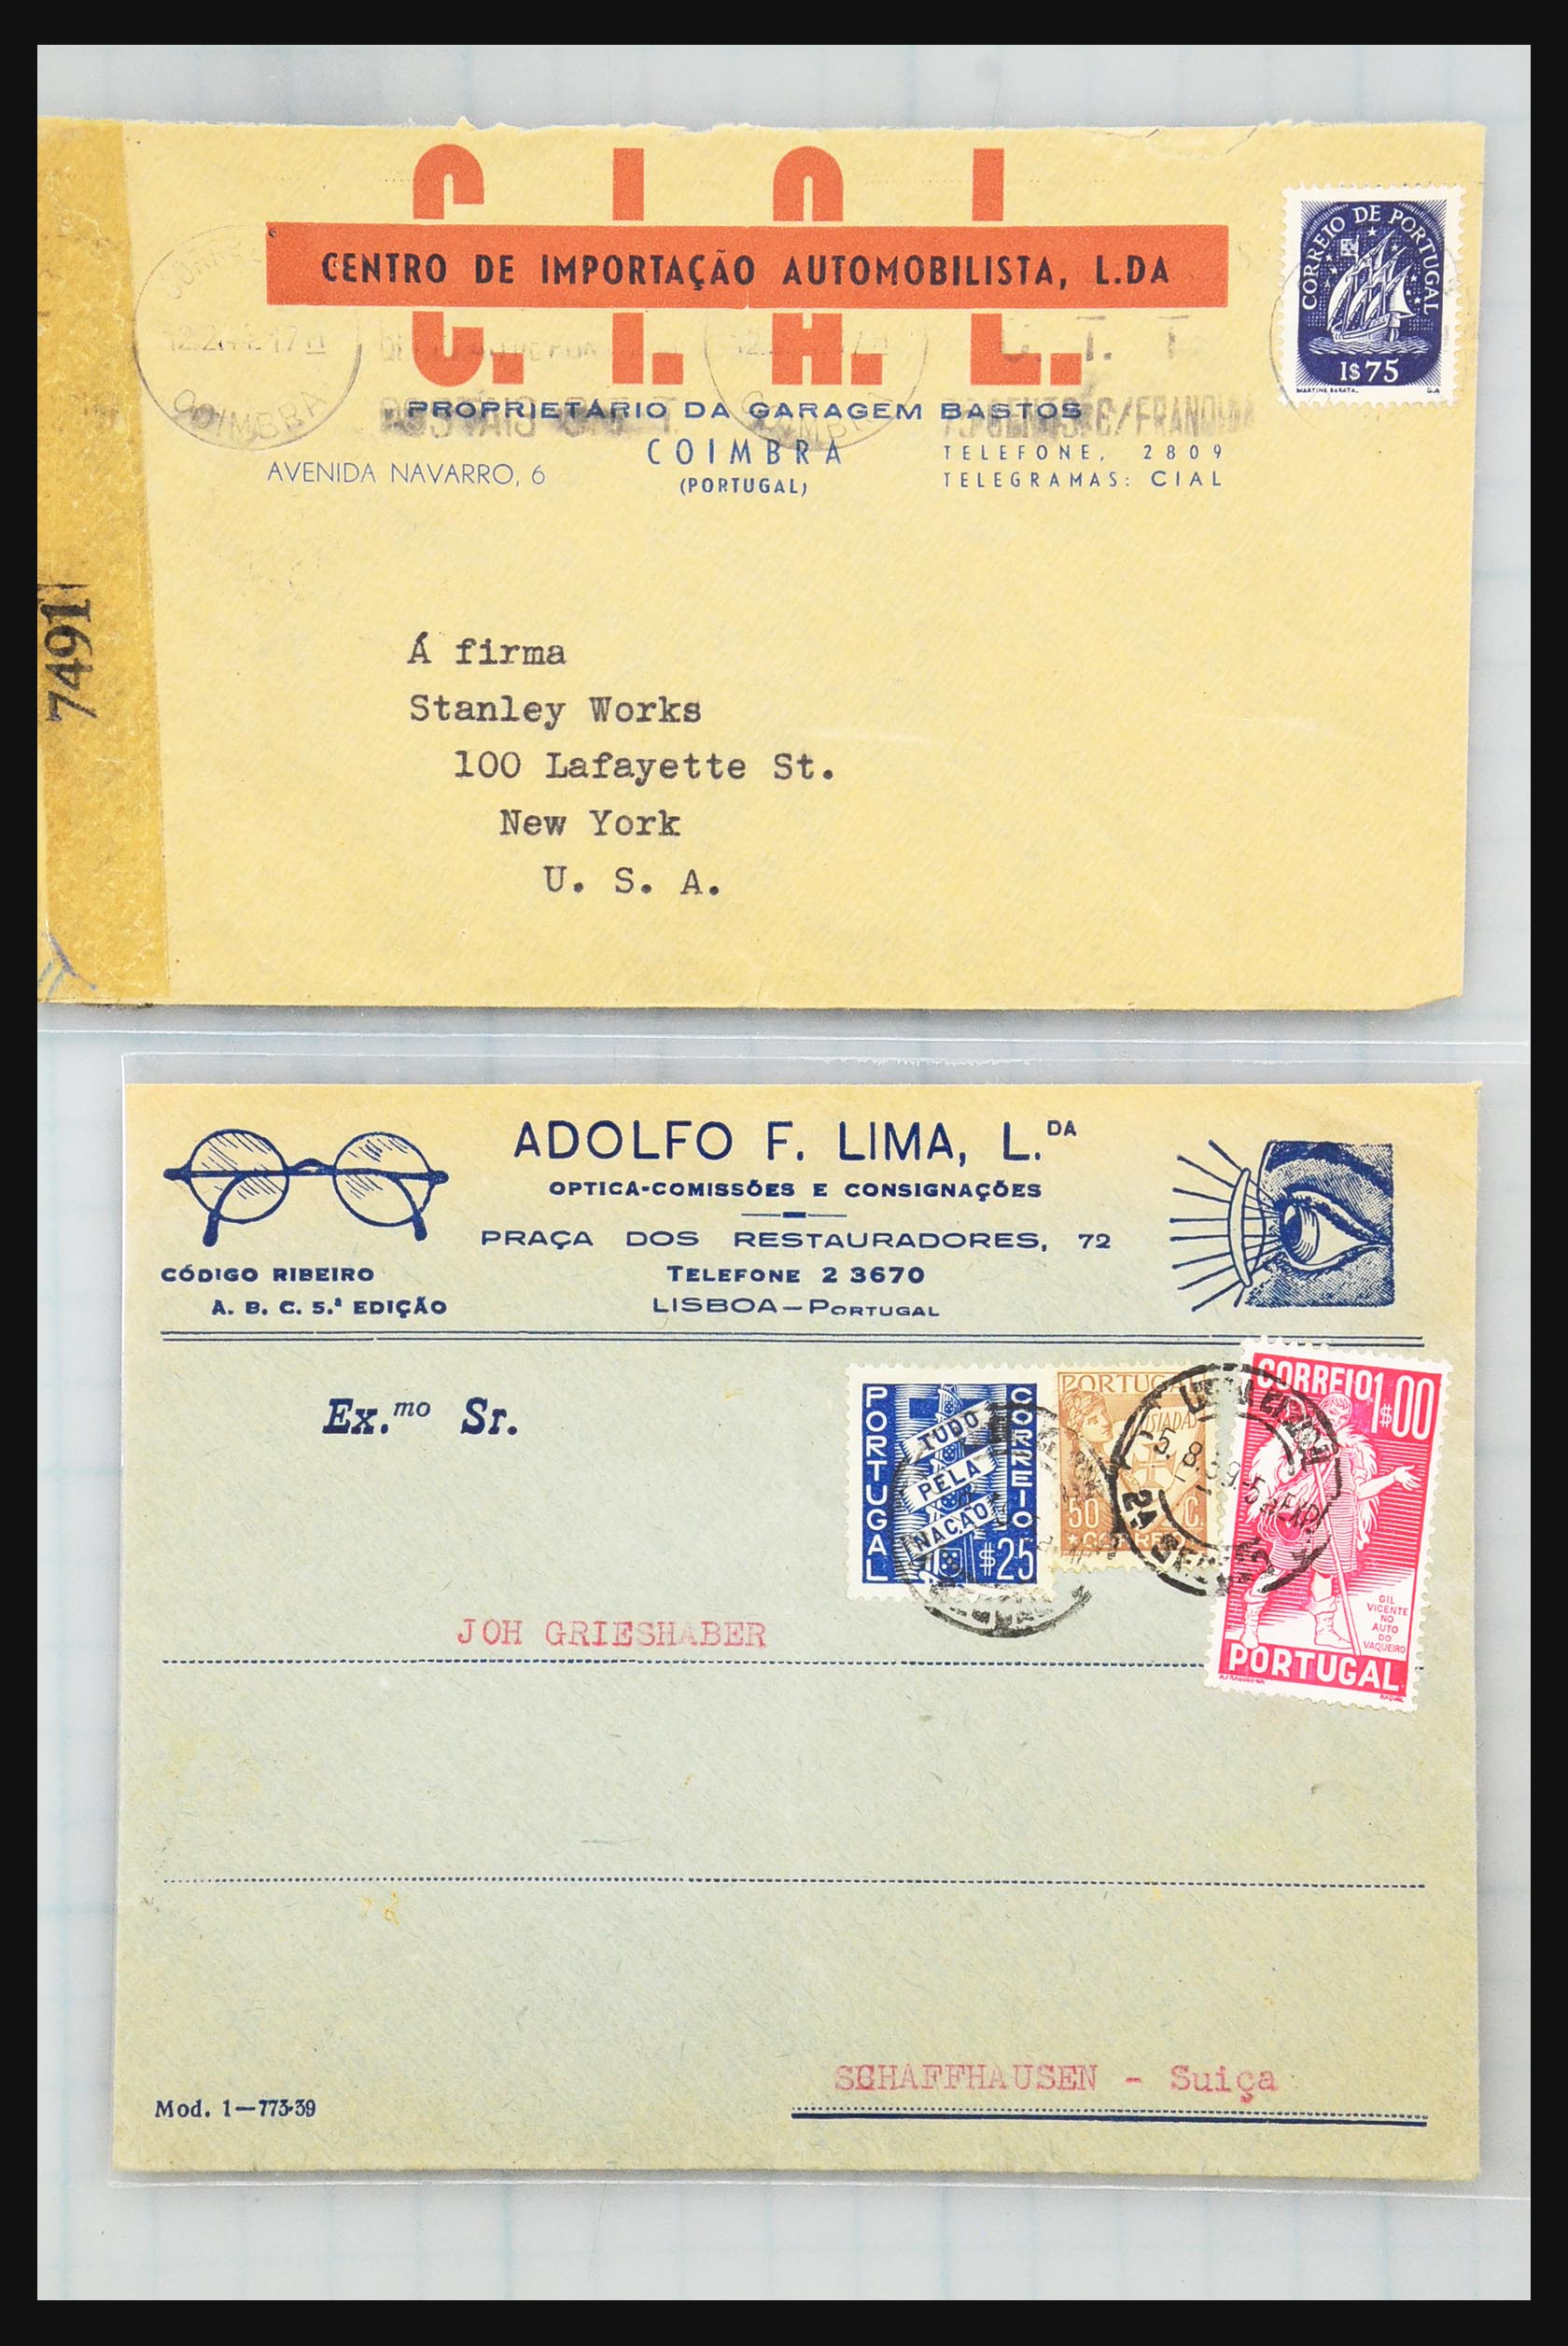 31358 119 - 31358 Portugal/Luxemburg/Griekenland brieven 1880-1960.